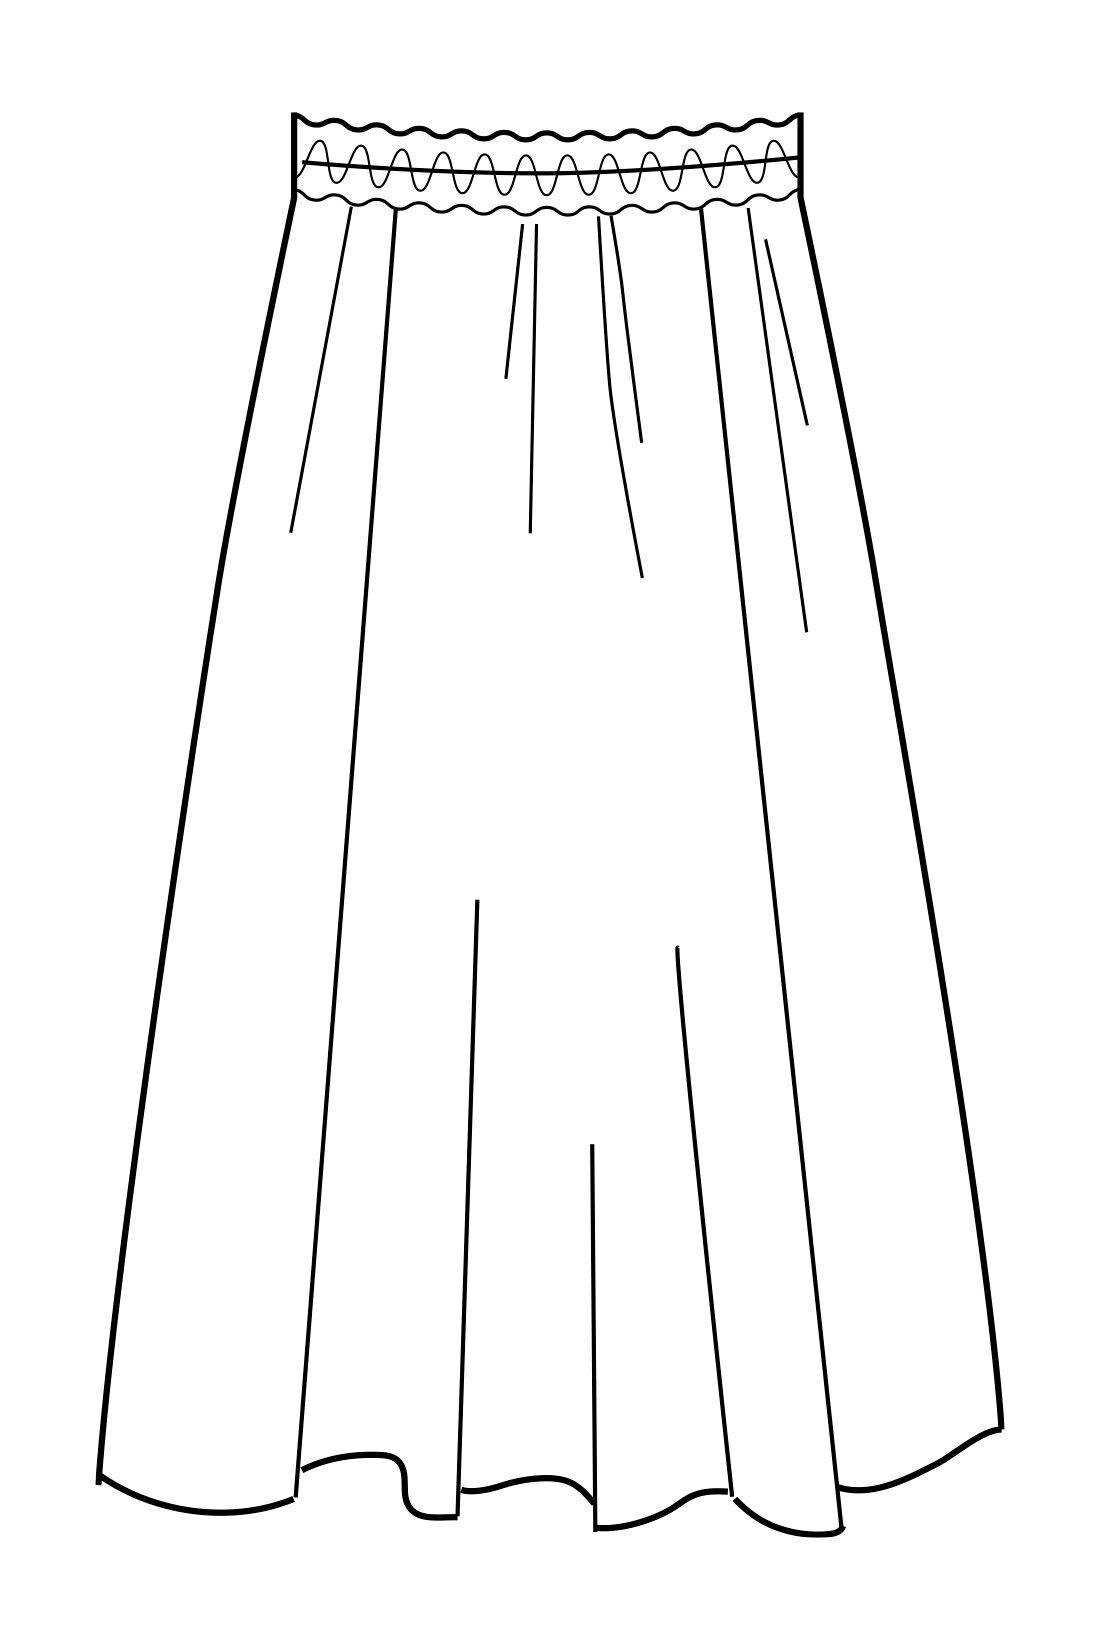 Real Stock|IEDIT[イディット] Natsu Yamaguchiコラボ にじみ柄のニュアンスが大人っぽい モードに着たいフラワースカート〈キャメルブラウン〉|フロント左右と後ろ中央で切り替えたデザイン。